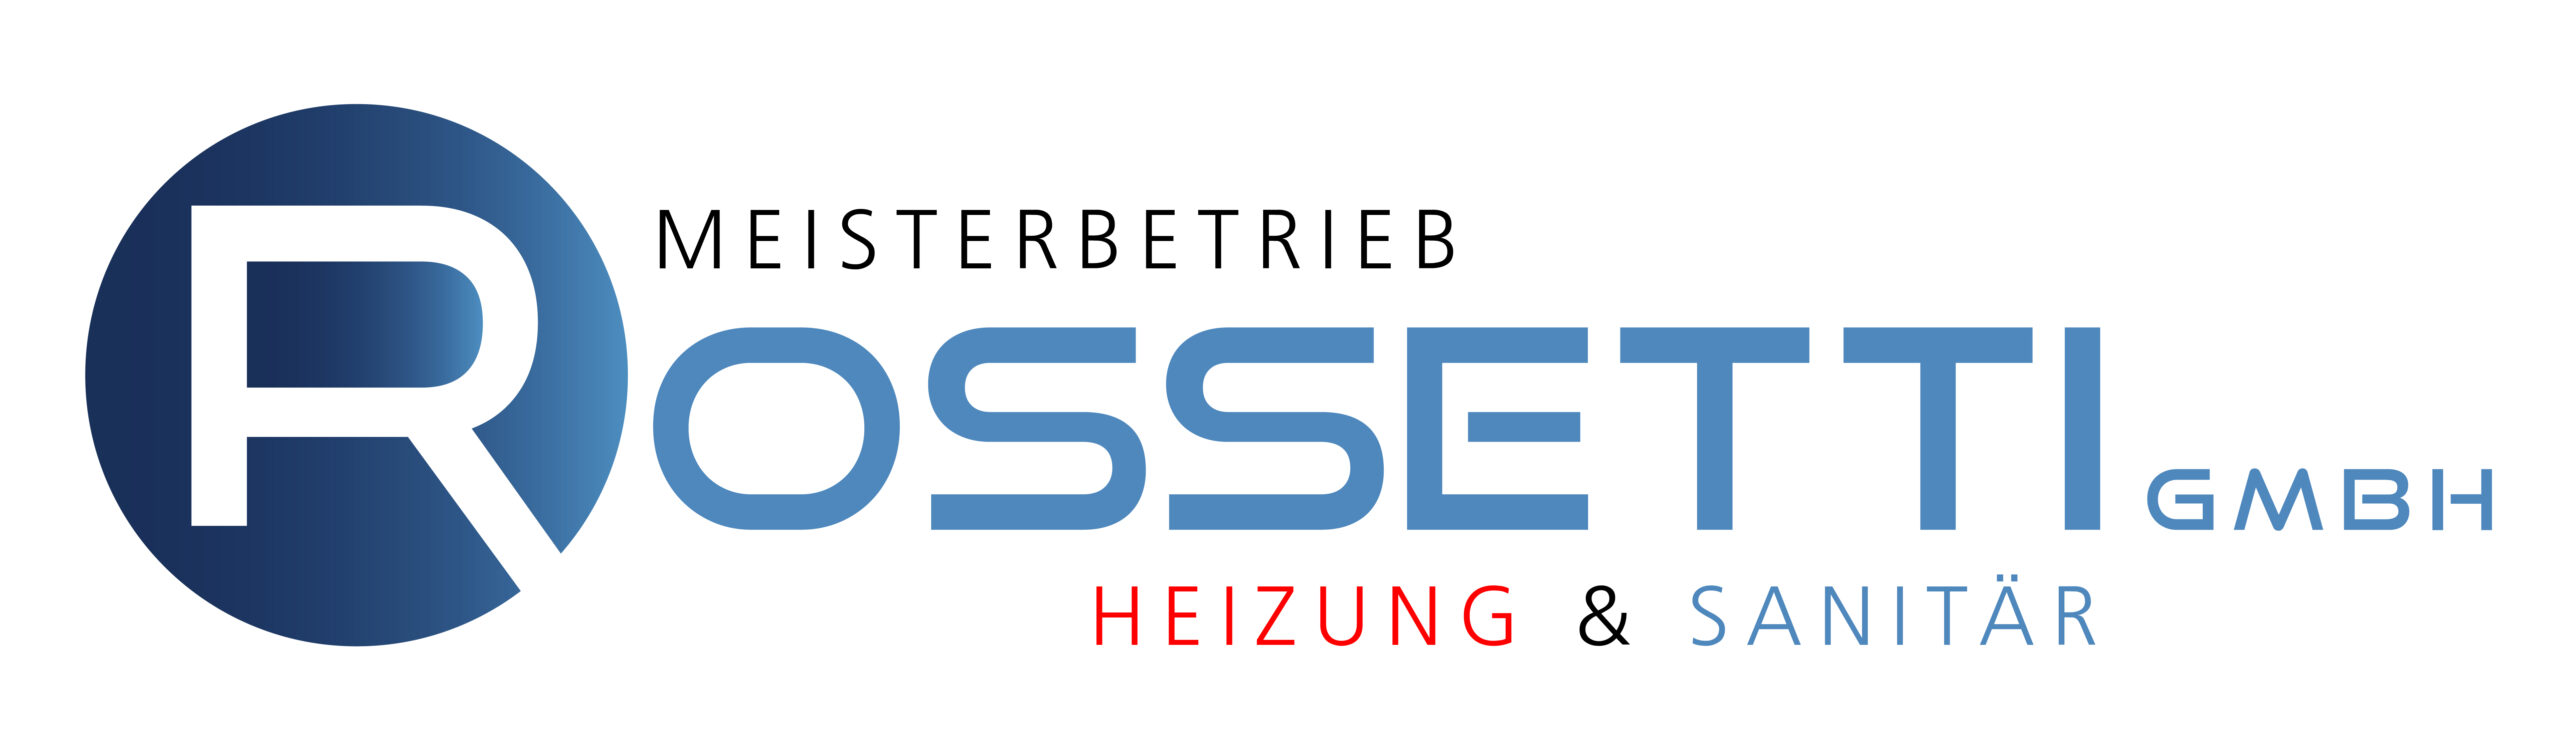 Heizung, Sanitär & Klimatechnik – Rossetti GmbH